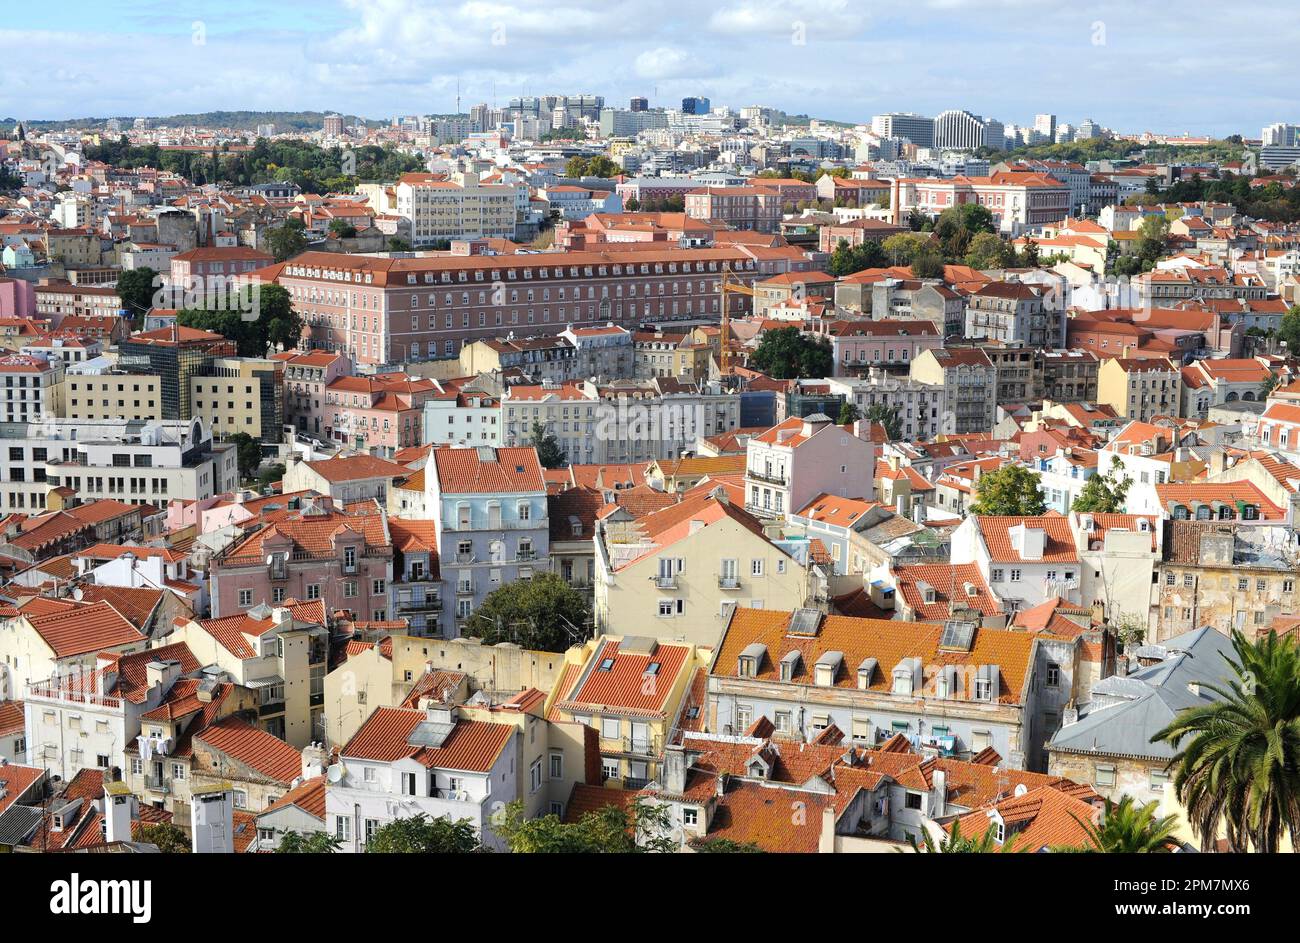 Lisboa (Lisboa), vista panorámica. Portugal. Foto de stock